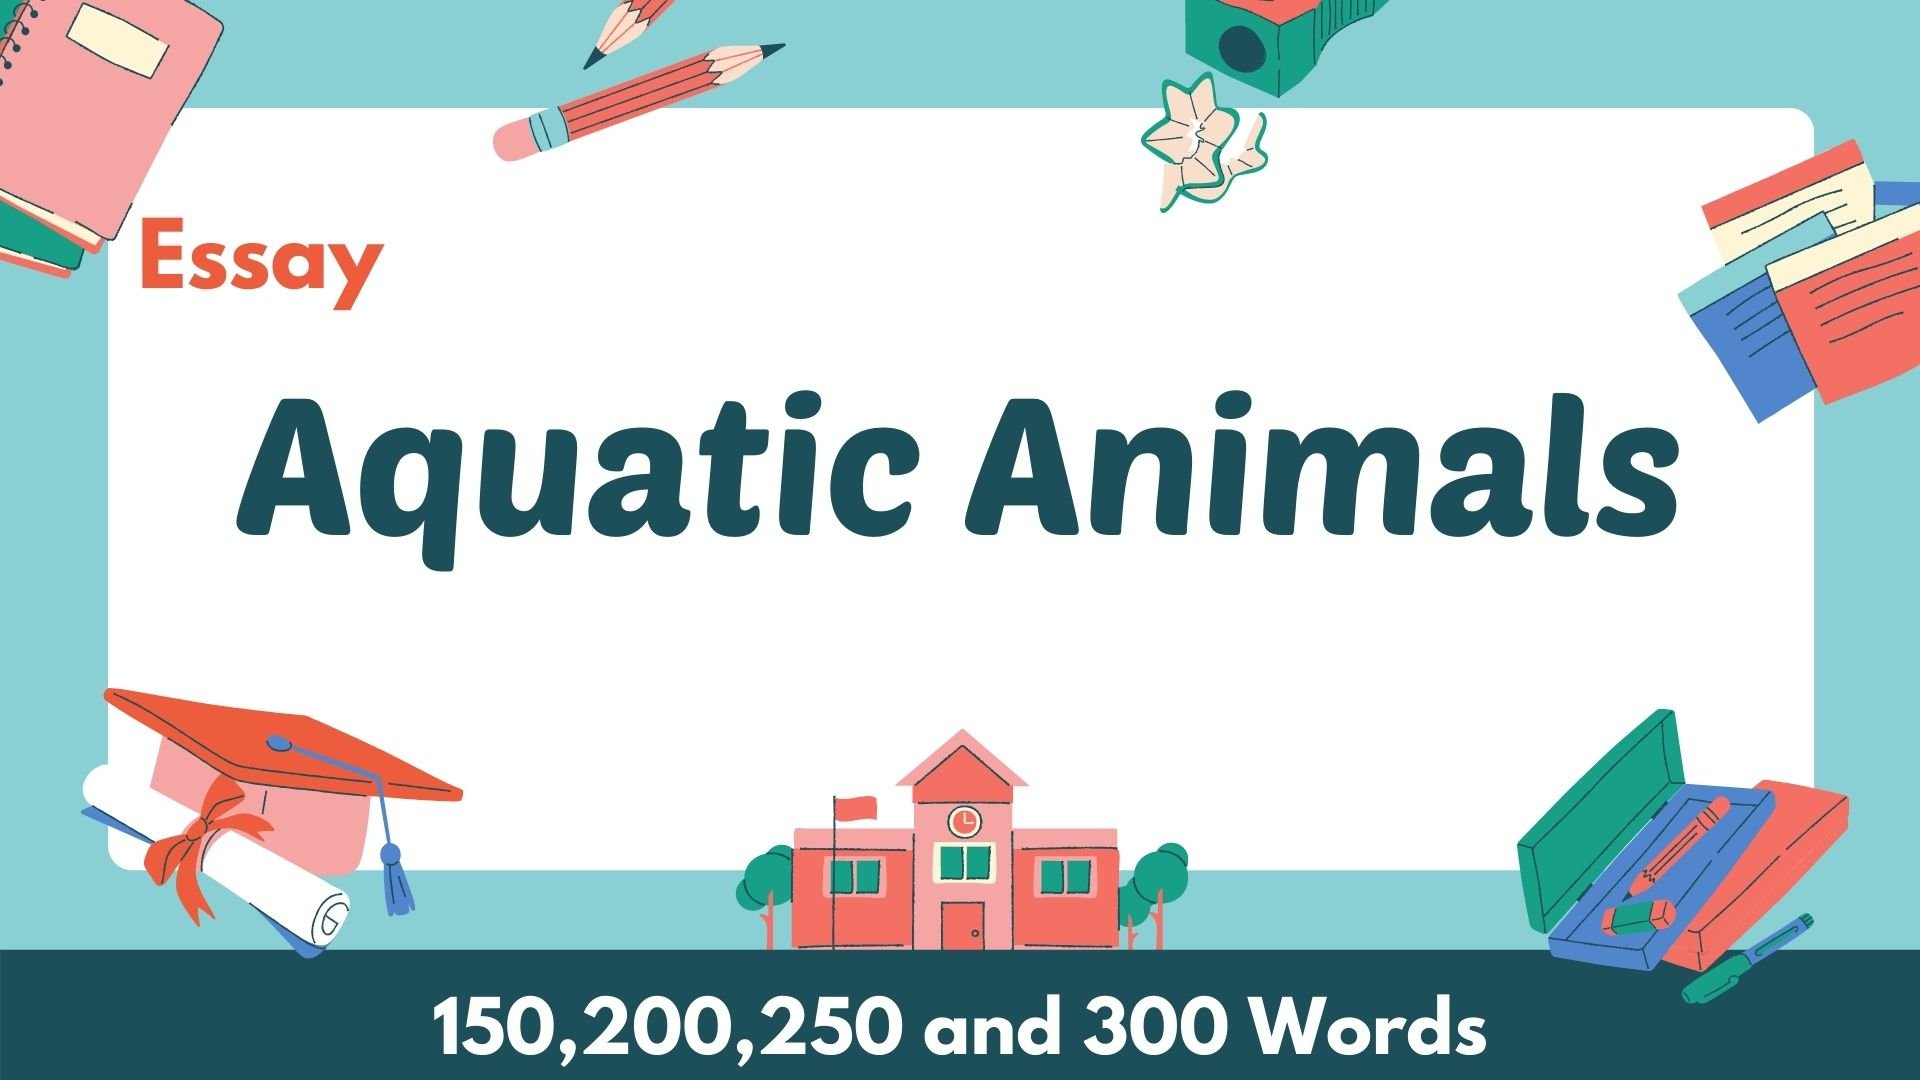 English Essay on Aquatic Animals